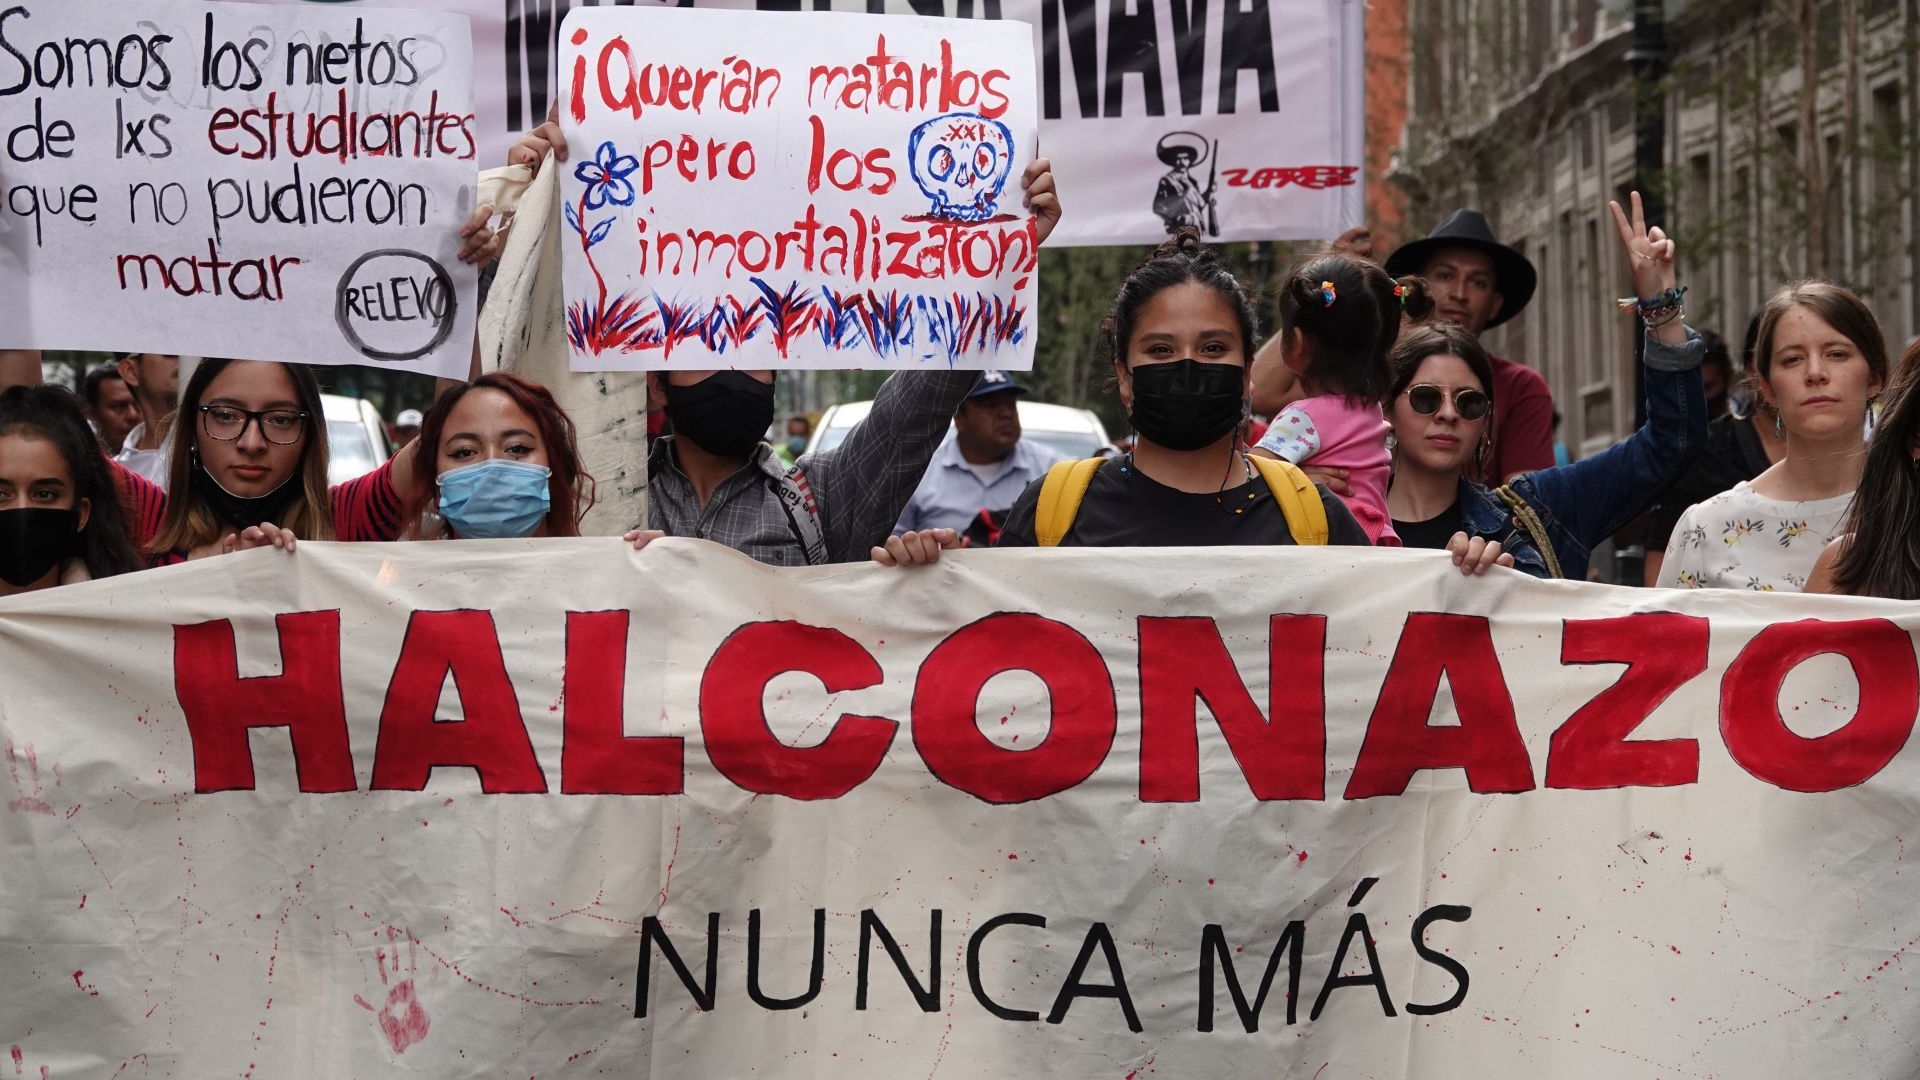 Aniversario 52 del Halconazo: activistas marcharon en CDMX para conmemorar masacre de más de 200 jóvenes